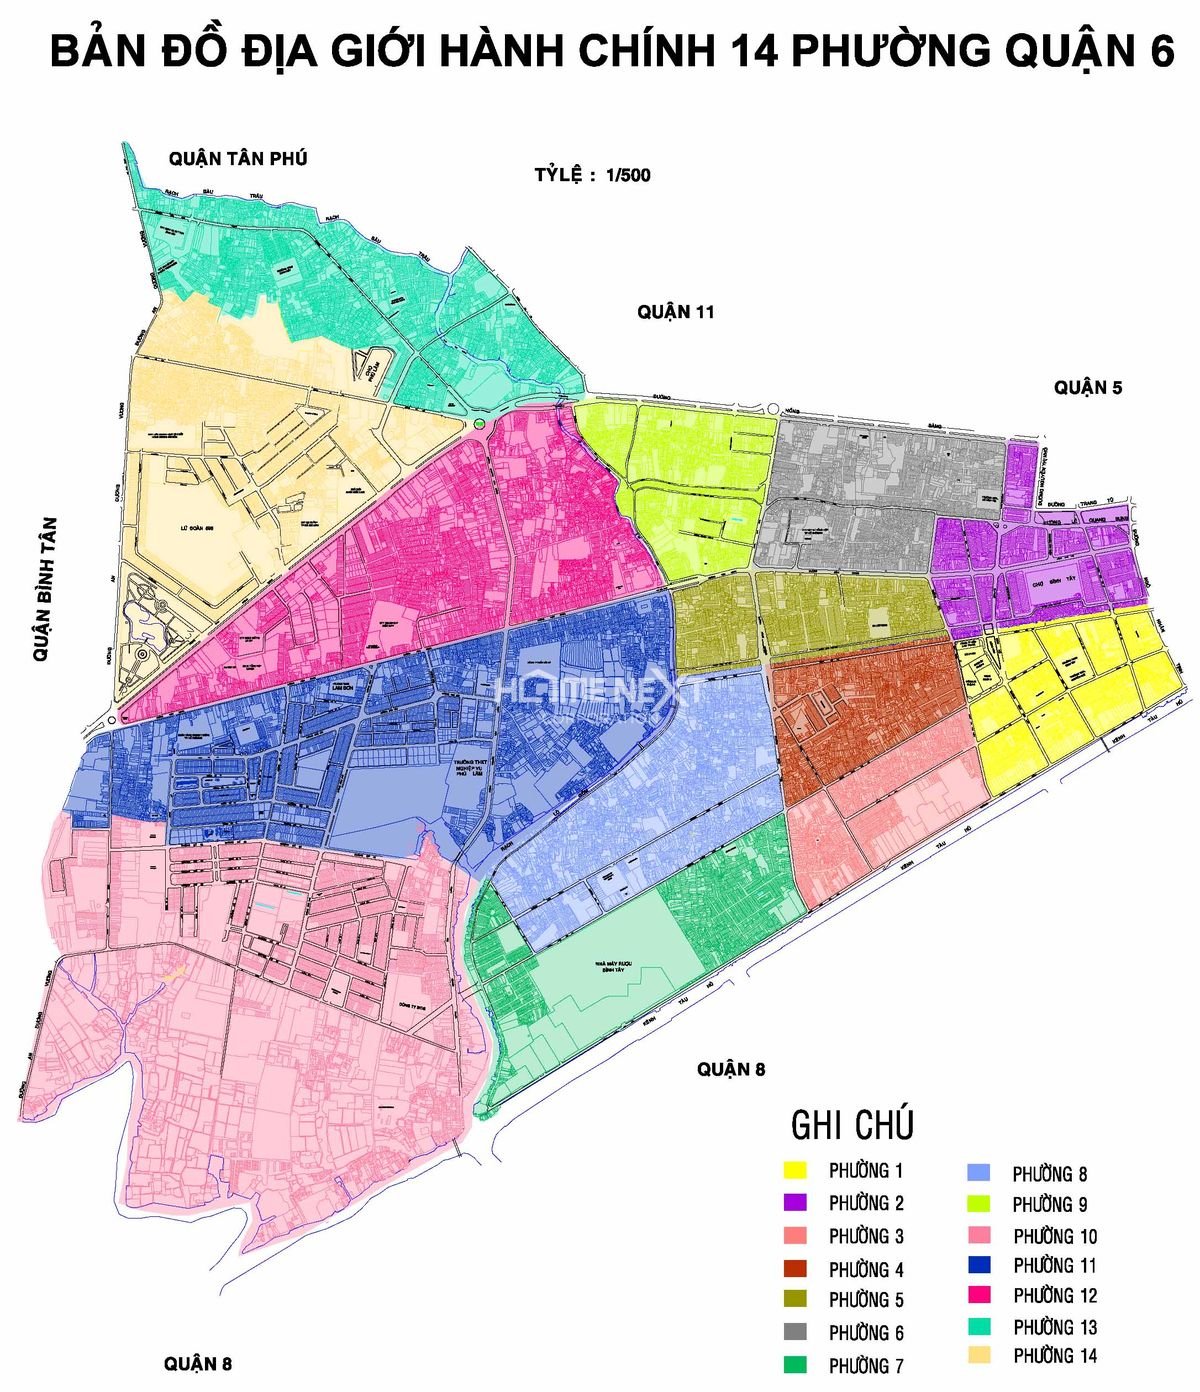 Để cập nhật những thay đổi mới nhất của quận 6 và phường 14, quận 10, TP.HCM, quý khách có thể tham khảo bản đồ mới nhất của quận 6 và bản đồ phường 14, quận 10 để nắm bắt trọn vẹn về địa giới hành chính và phát triển khu vực này. Xin mời quý khách click vào hình ảnh để xem chi tiết.